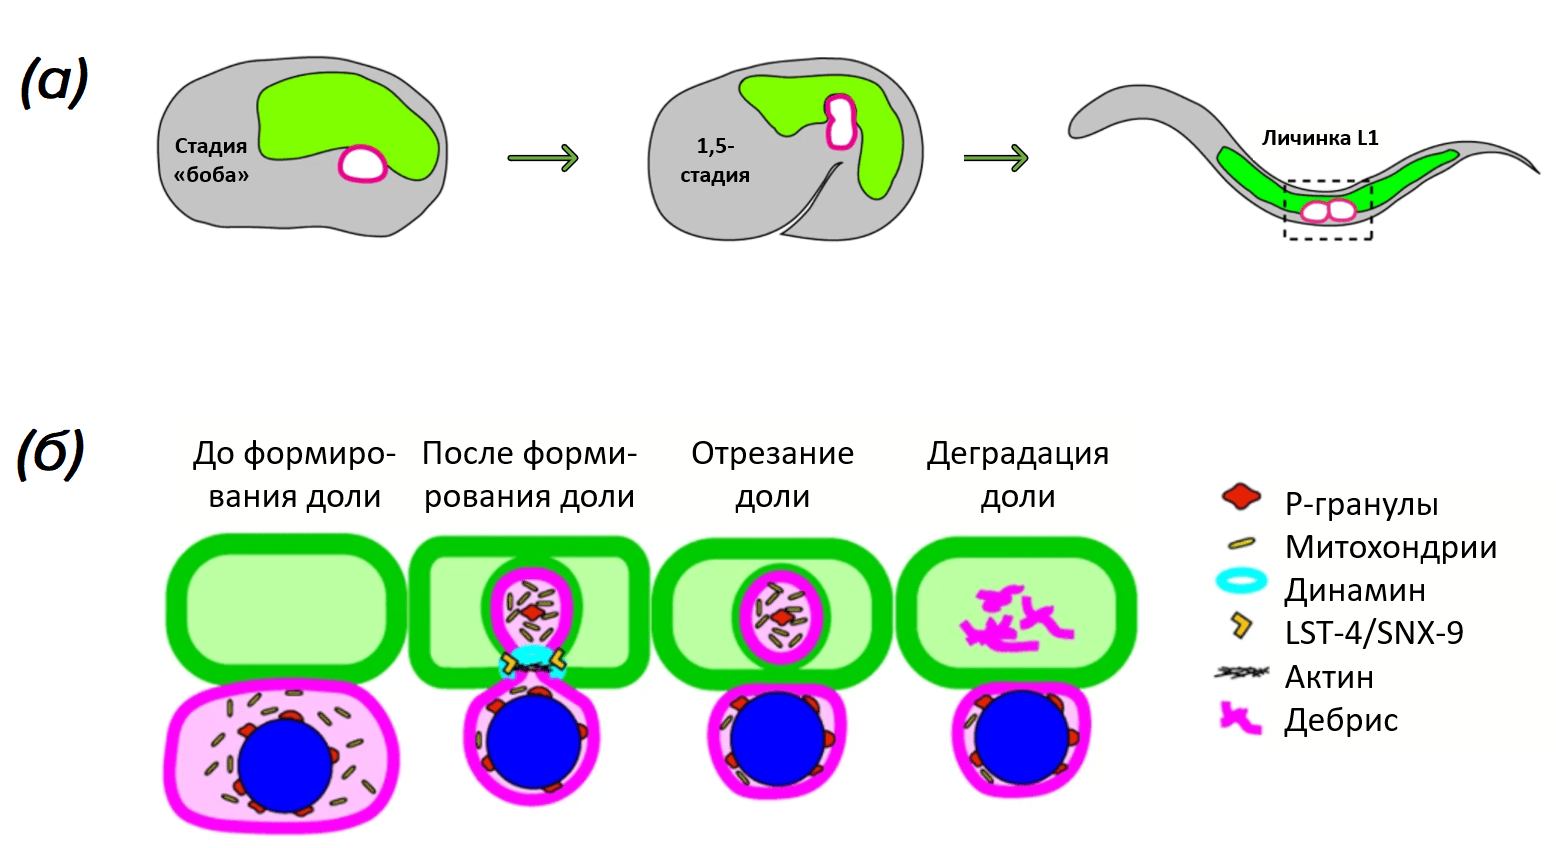 Трогоцитоз у нематоды C. elegans